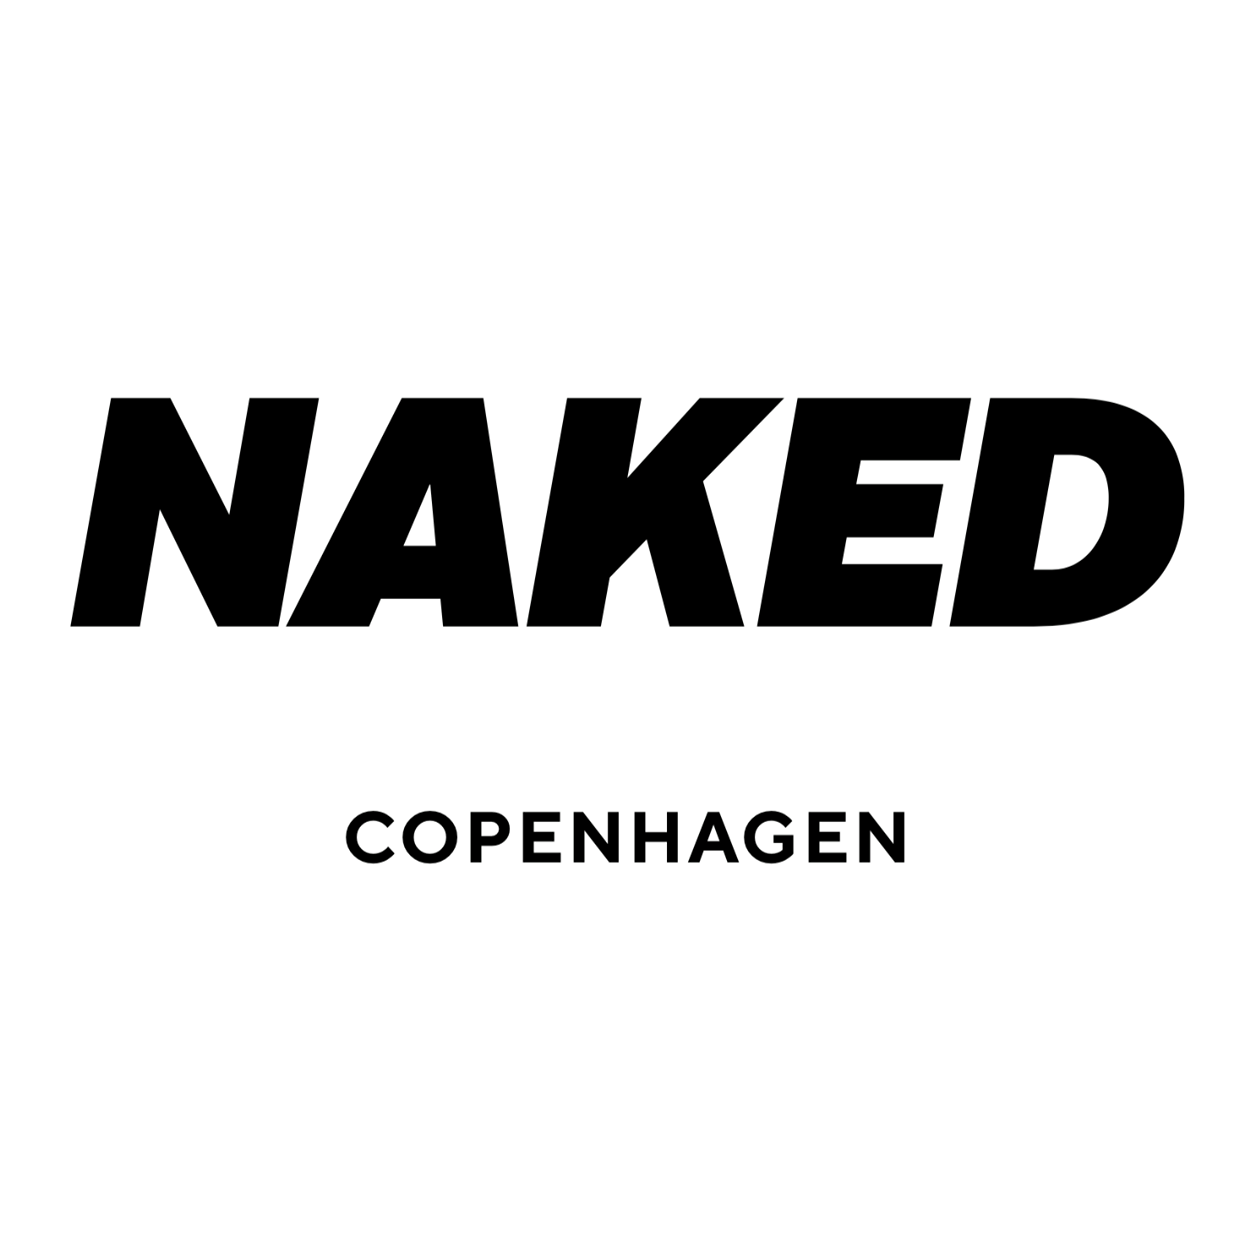 Scarpe in edizione limitata NAKED Copenhagen Forum